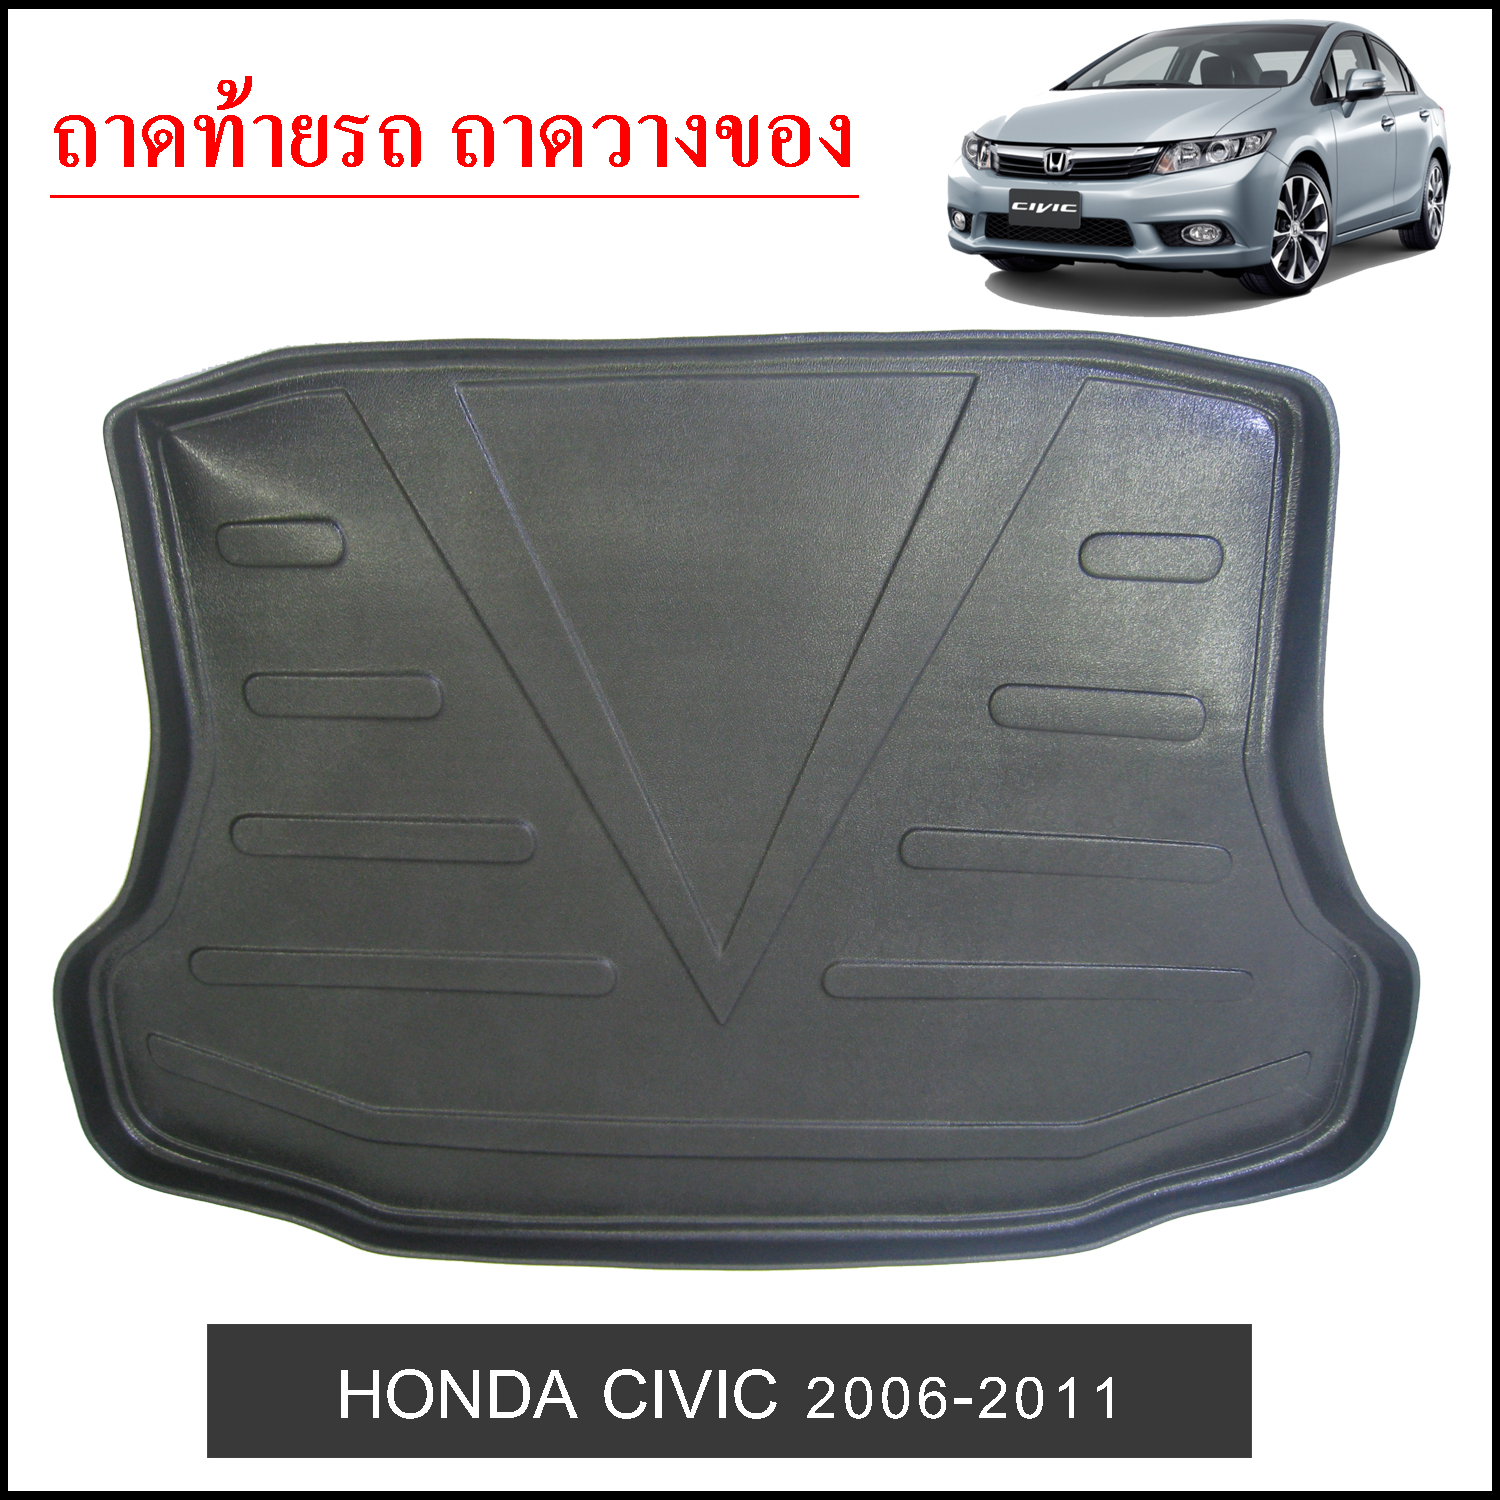 Honda Civic 2006-2011